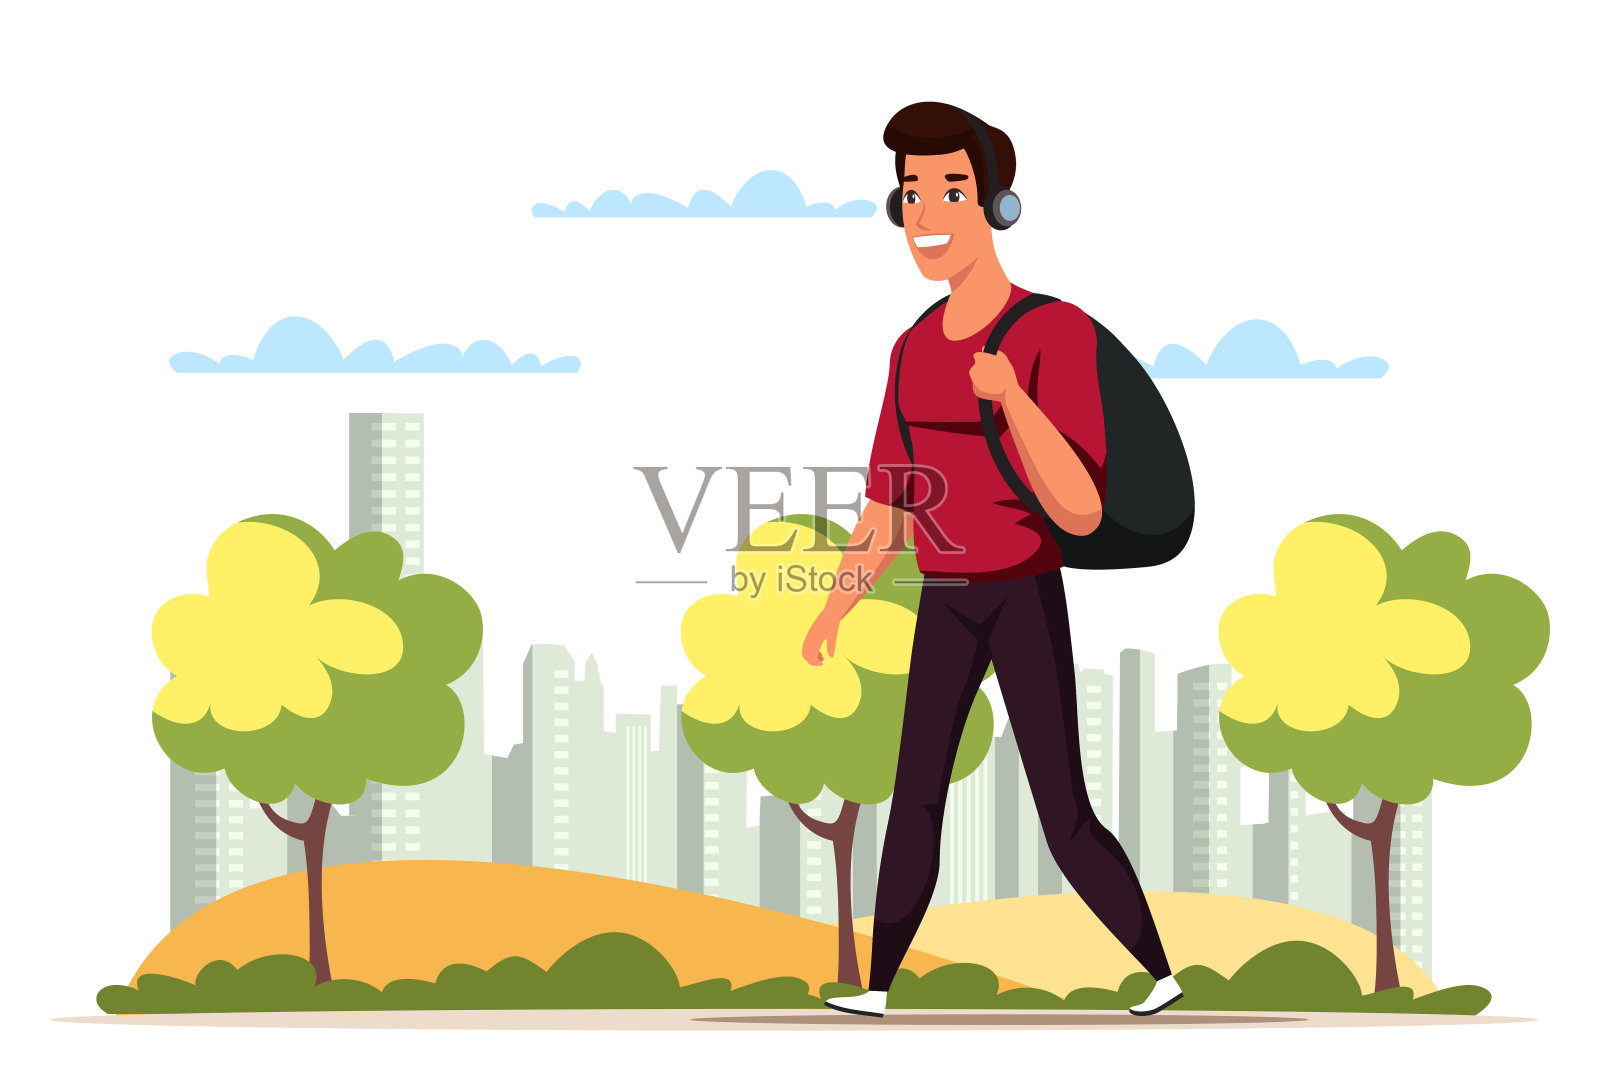 戴着耳机背着背包在公园里散步的男人设计元素图片